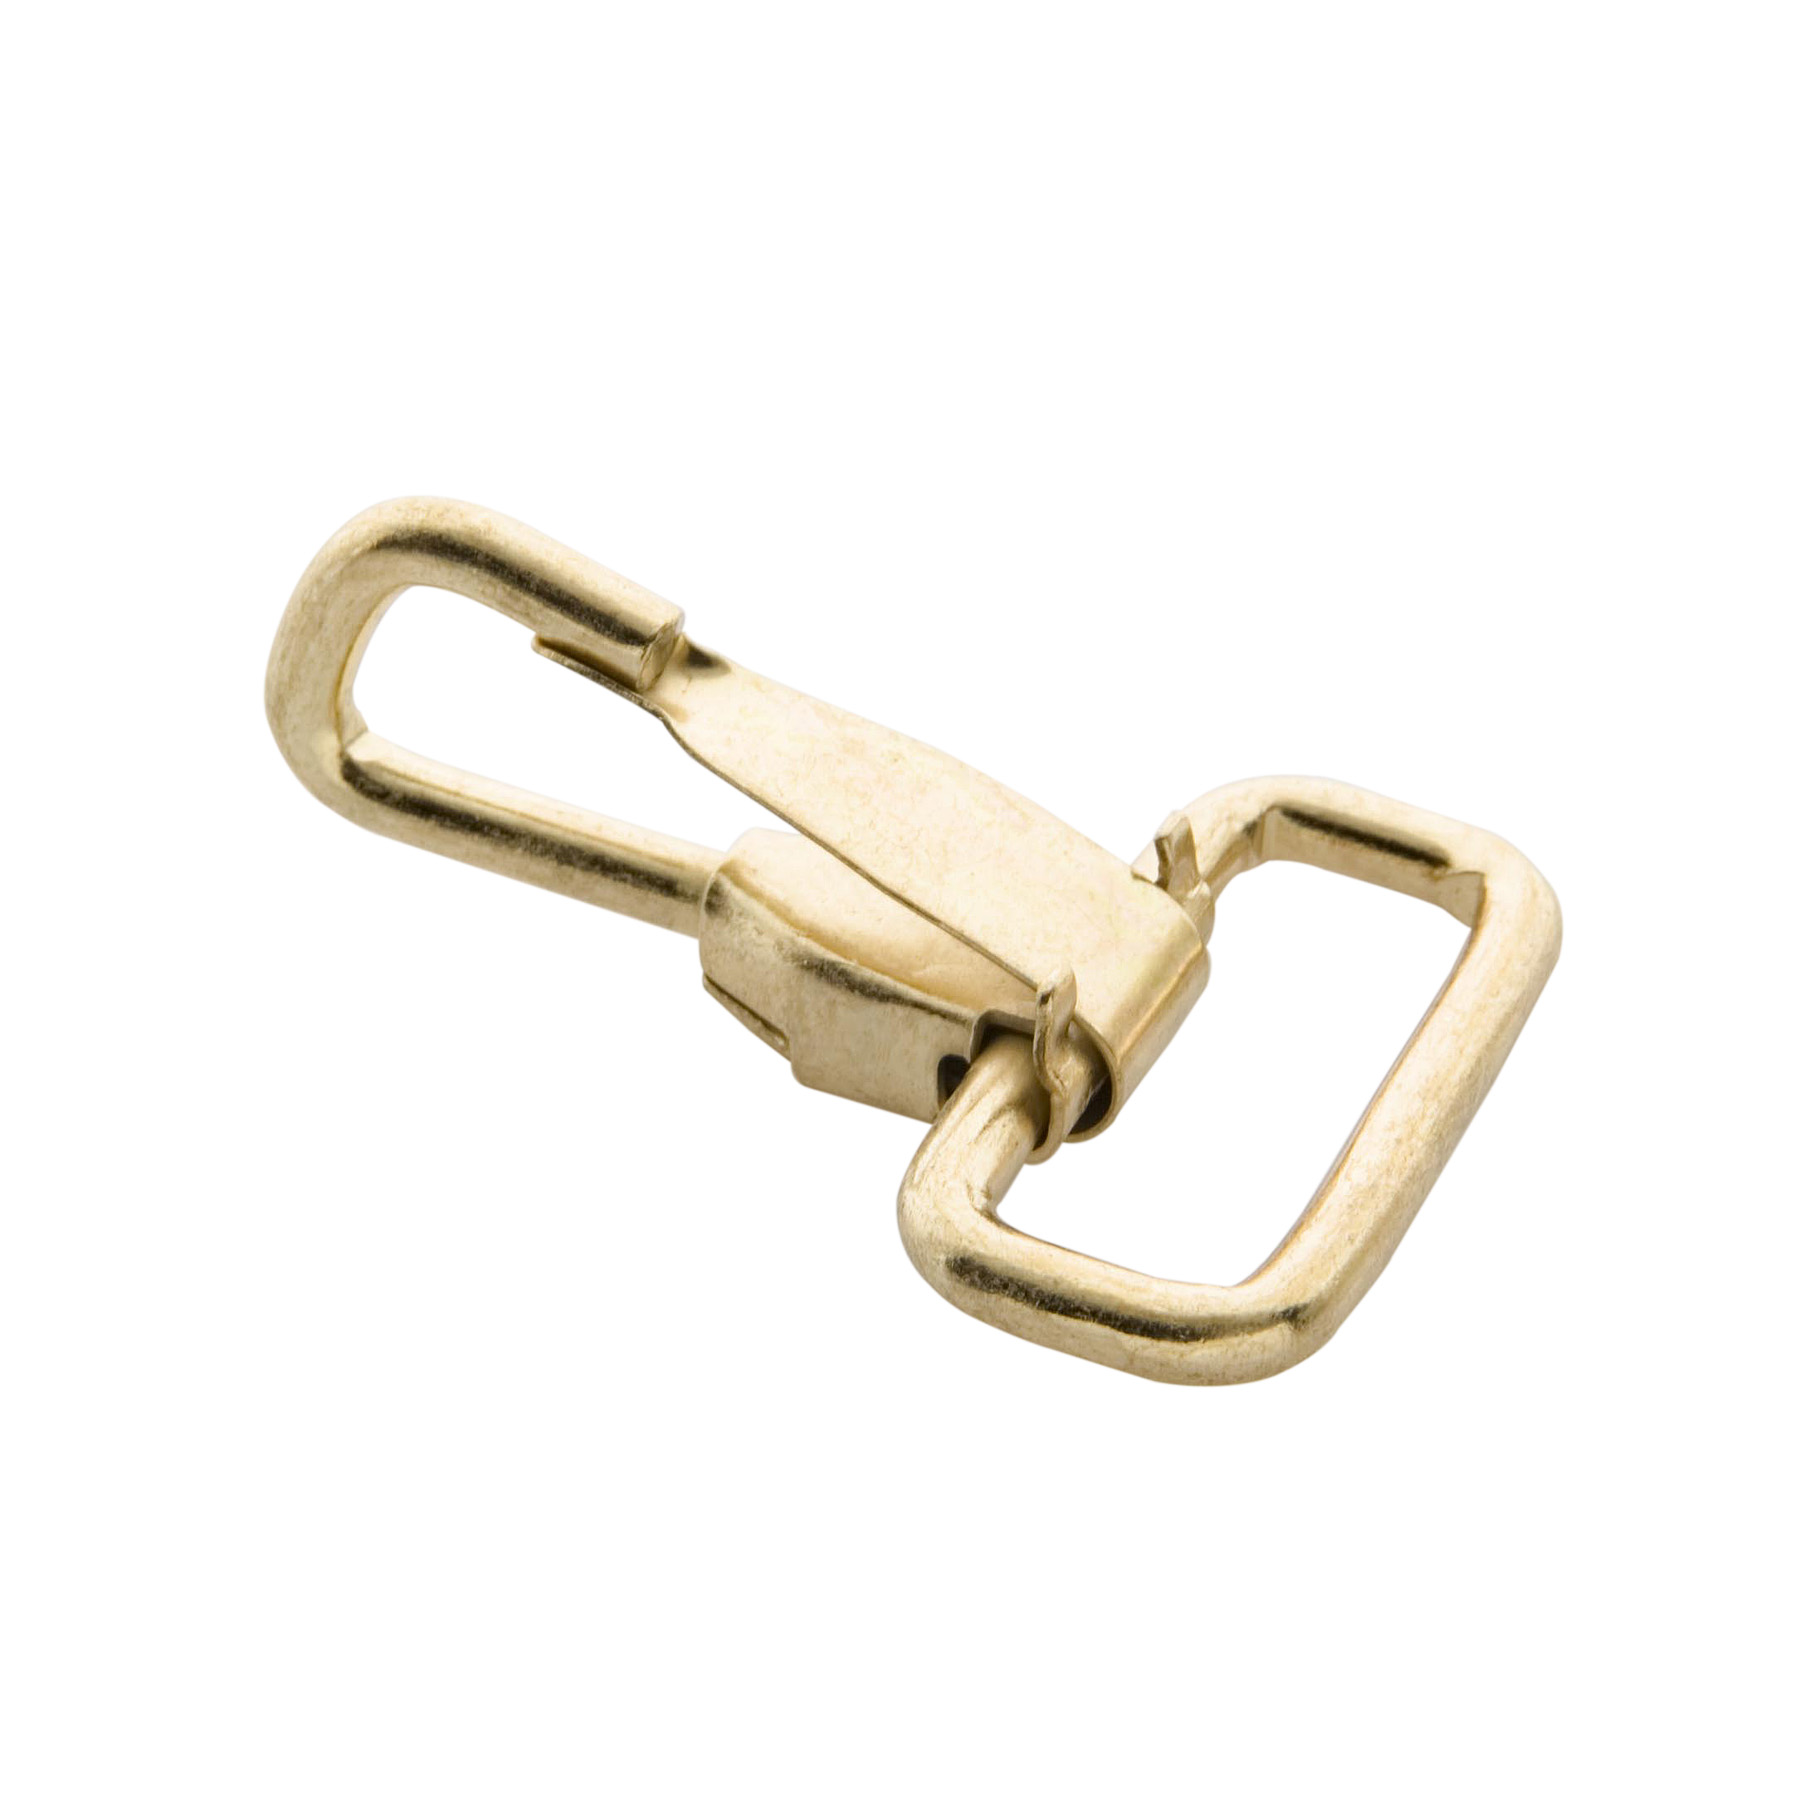 1 ½ in Heavy Duty Brass Plated Snap Hook - Industrial Snap Hooks